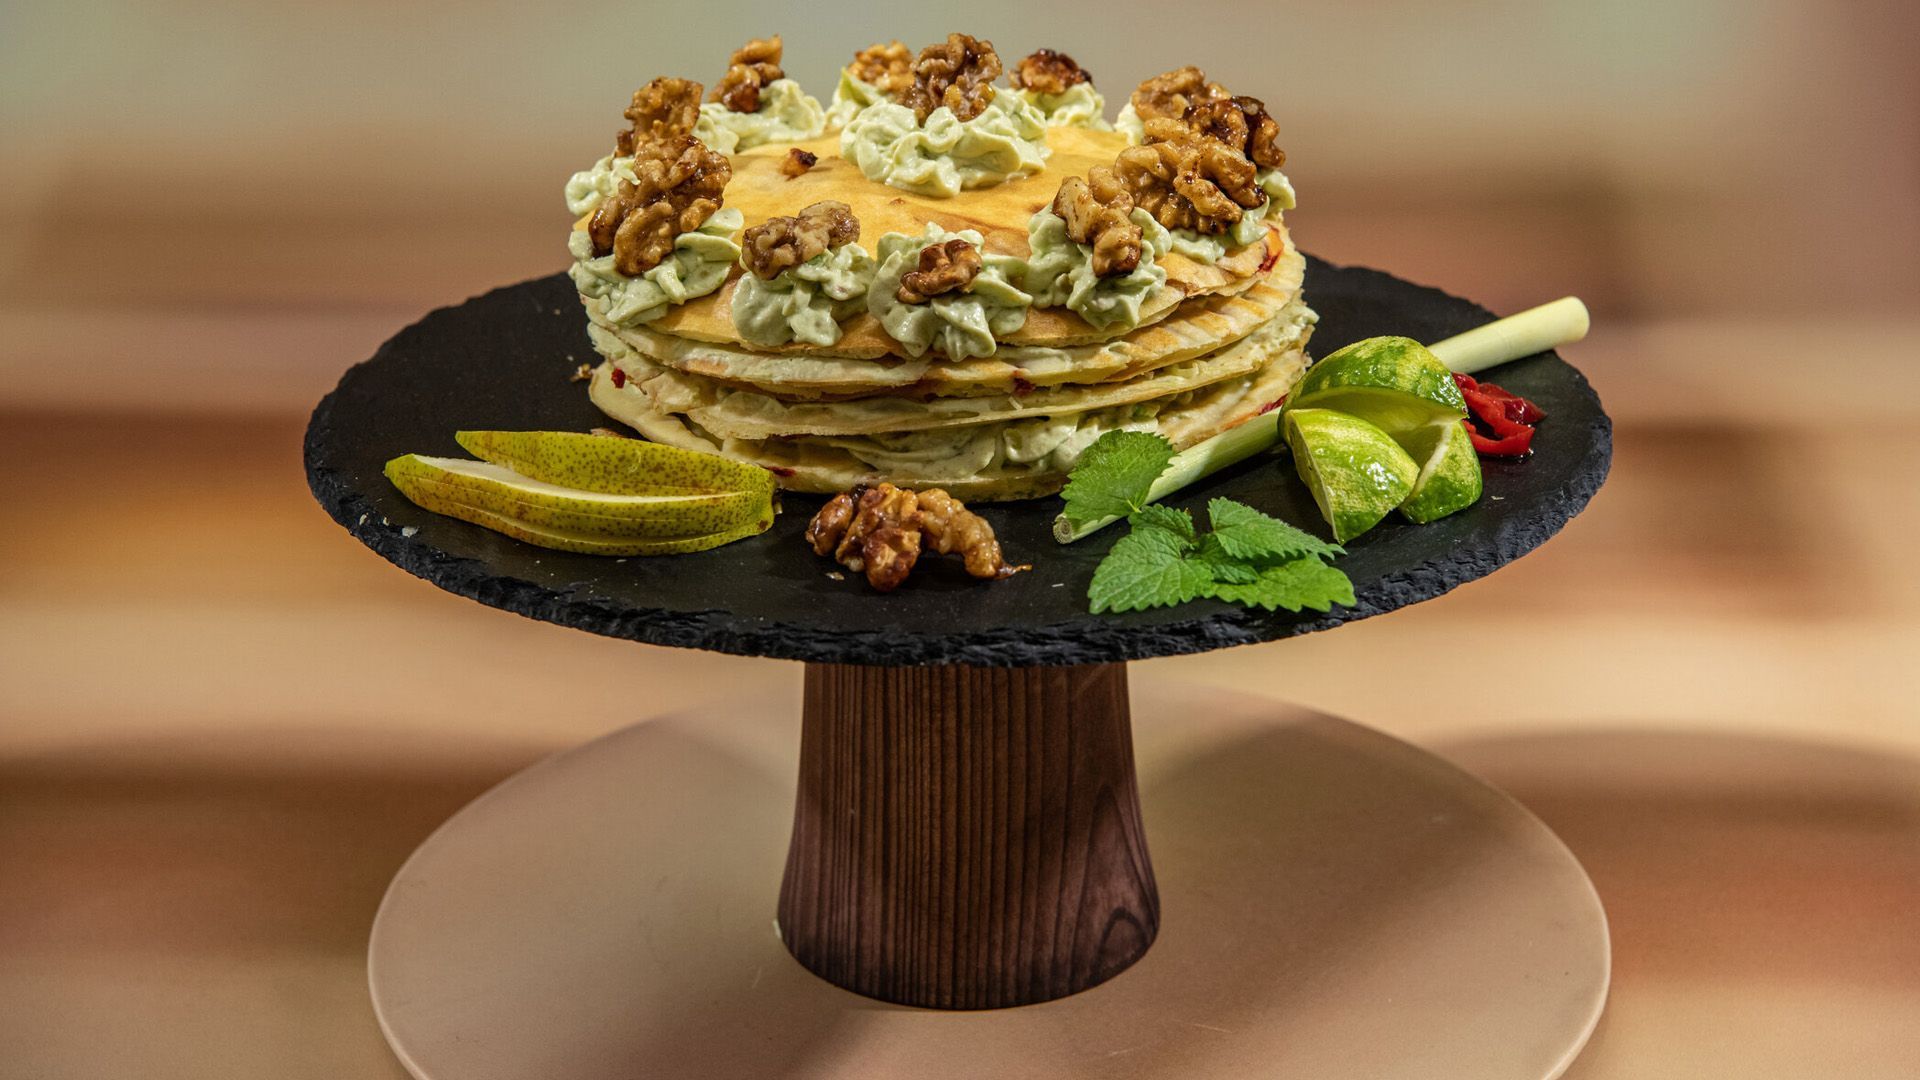 Jalapeño-Pfannkuchen mit Zitronengras-Avocado-Schmand, gedörrten Rumbirnen und Walnuss-Crunch